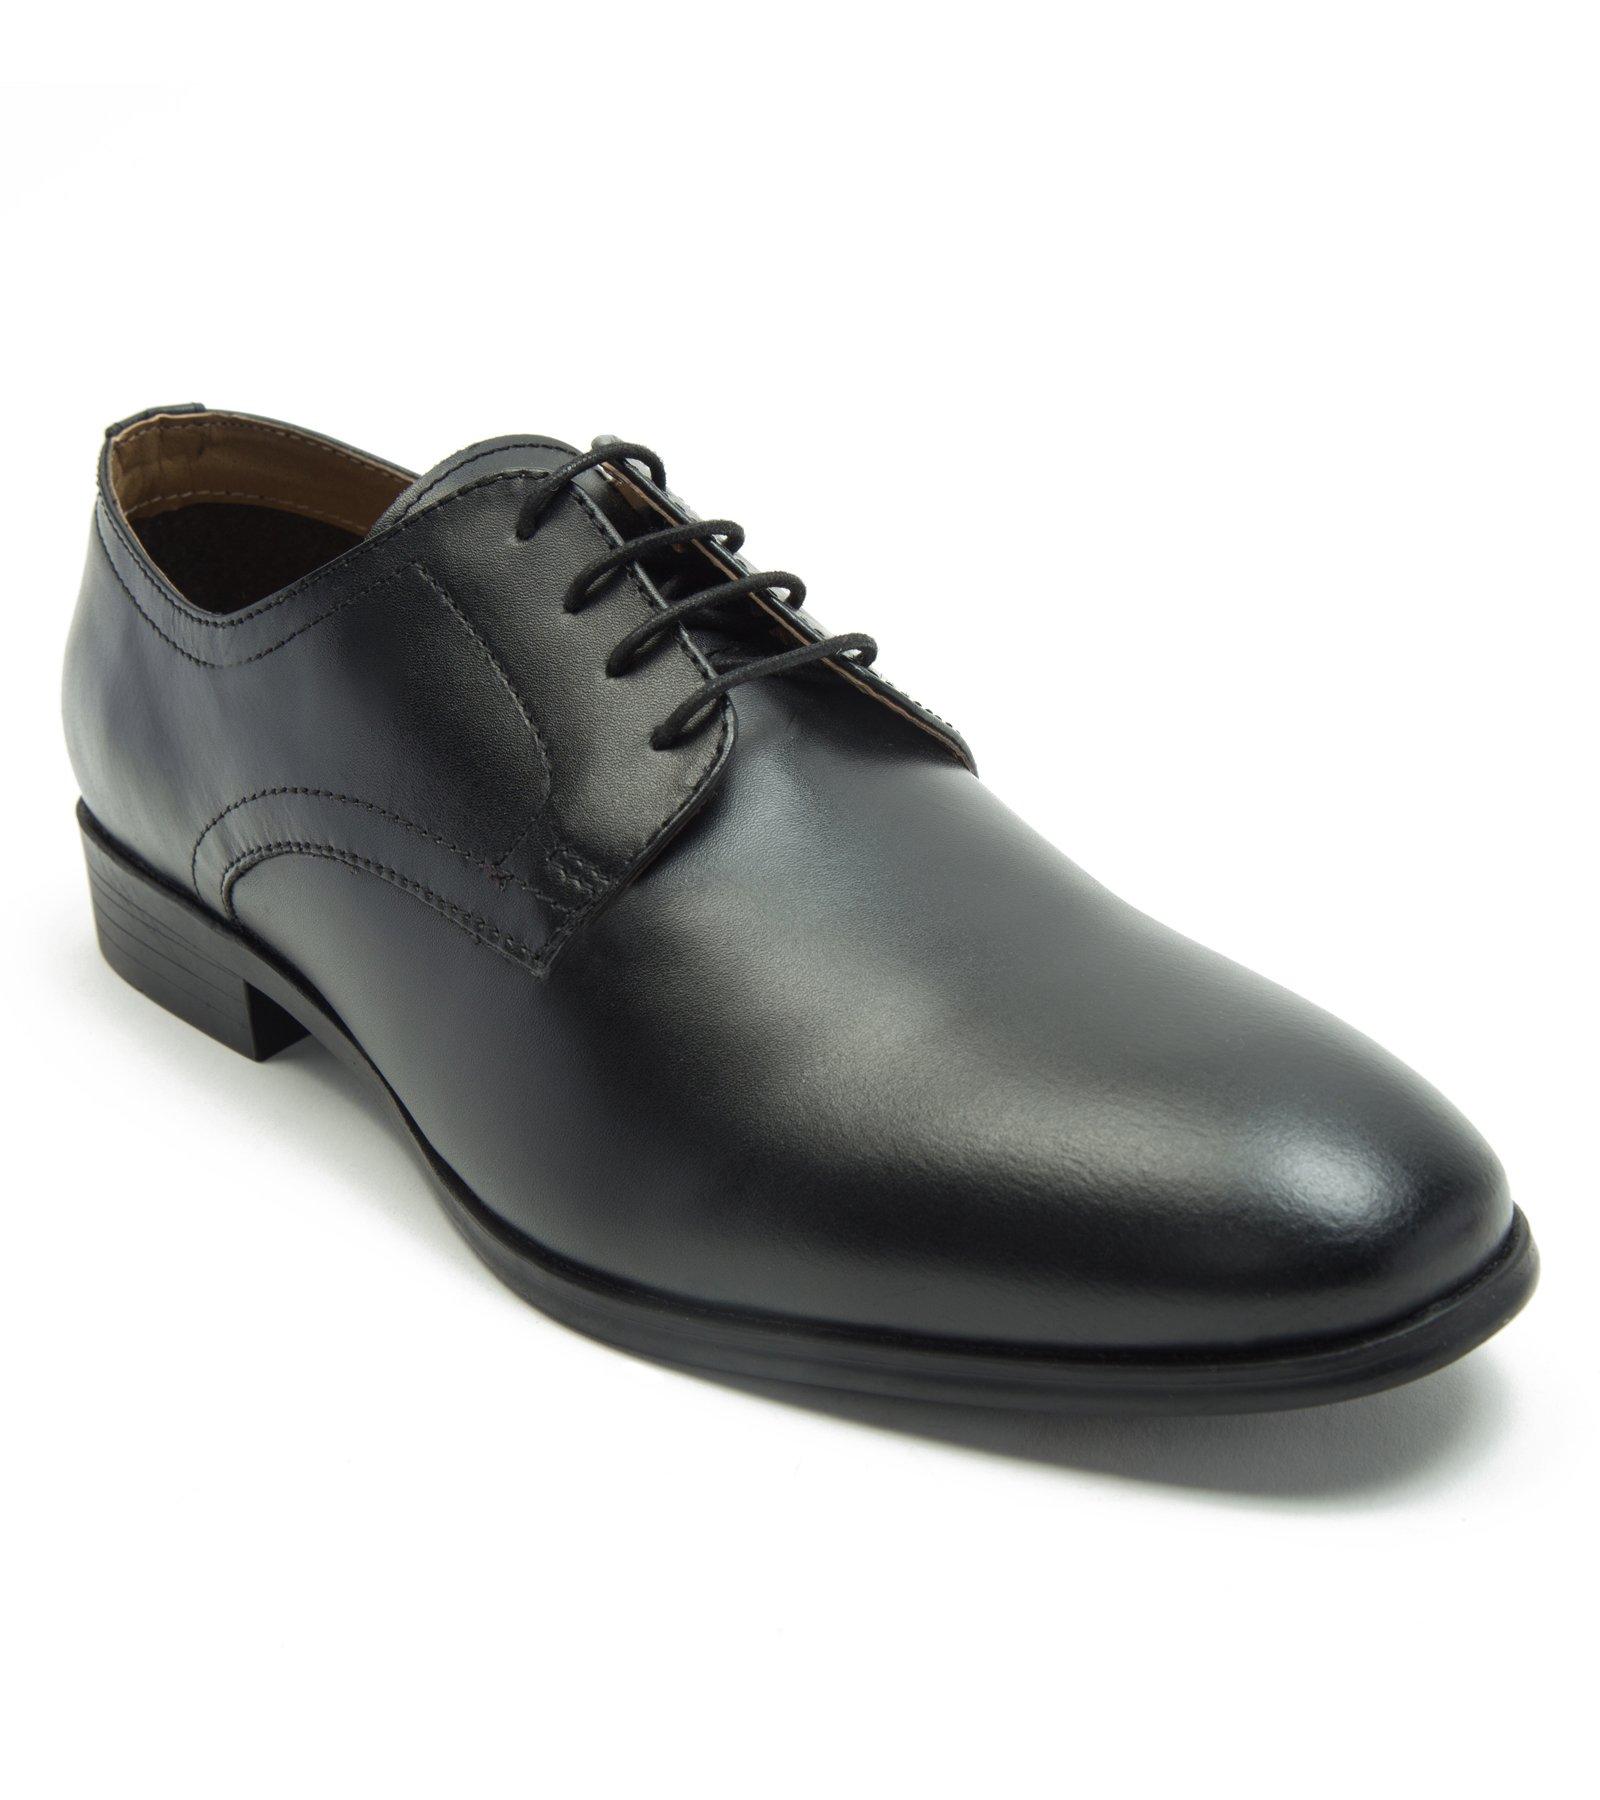 Формальная классическая обувь Silwood. Удобная и прочная модная обувь. Thomas Crick, черный